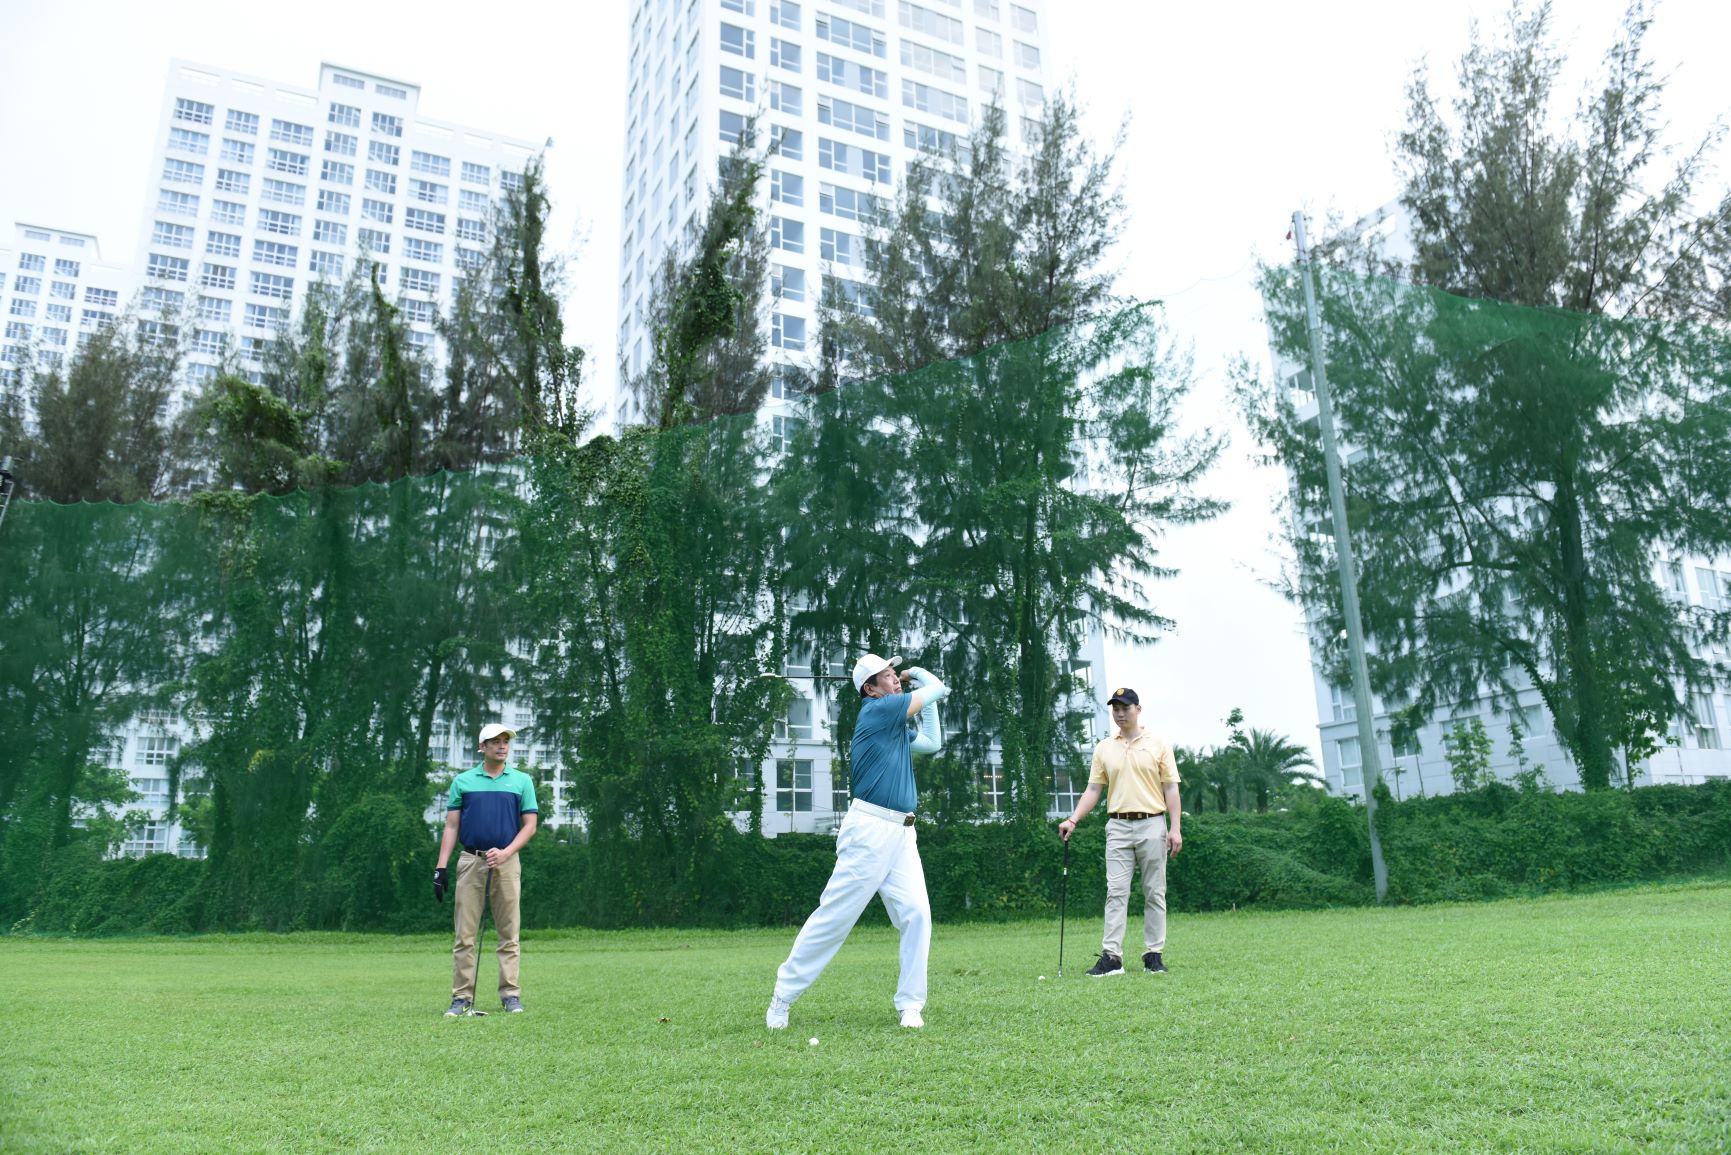 Sân Golf 9 lỗ nổi tiếng tại khu đô thị Phú Mỹ Hưng có vị trì nằm liền kề với Happy Vally Premier